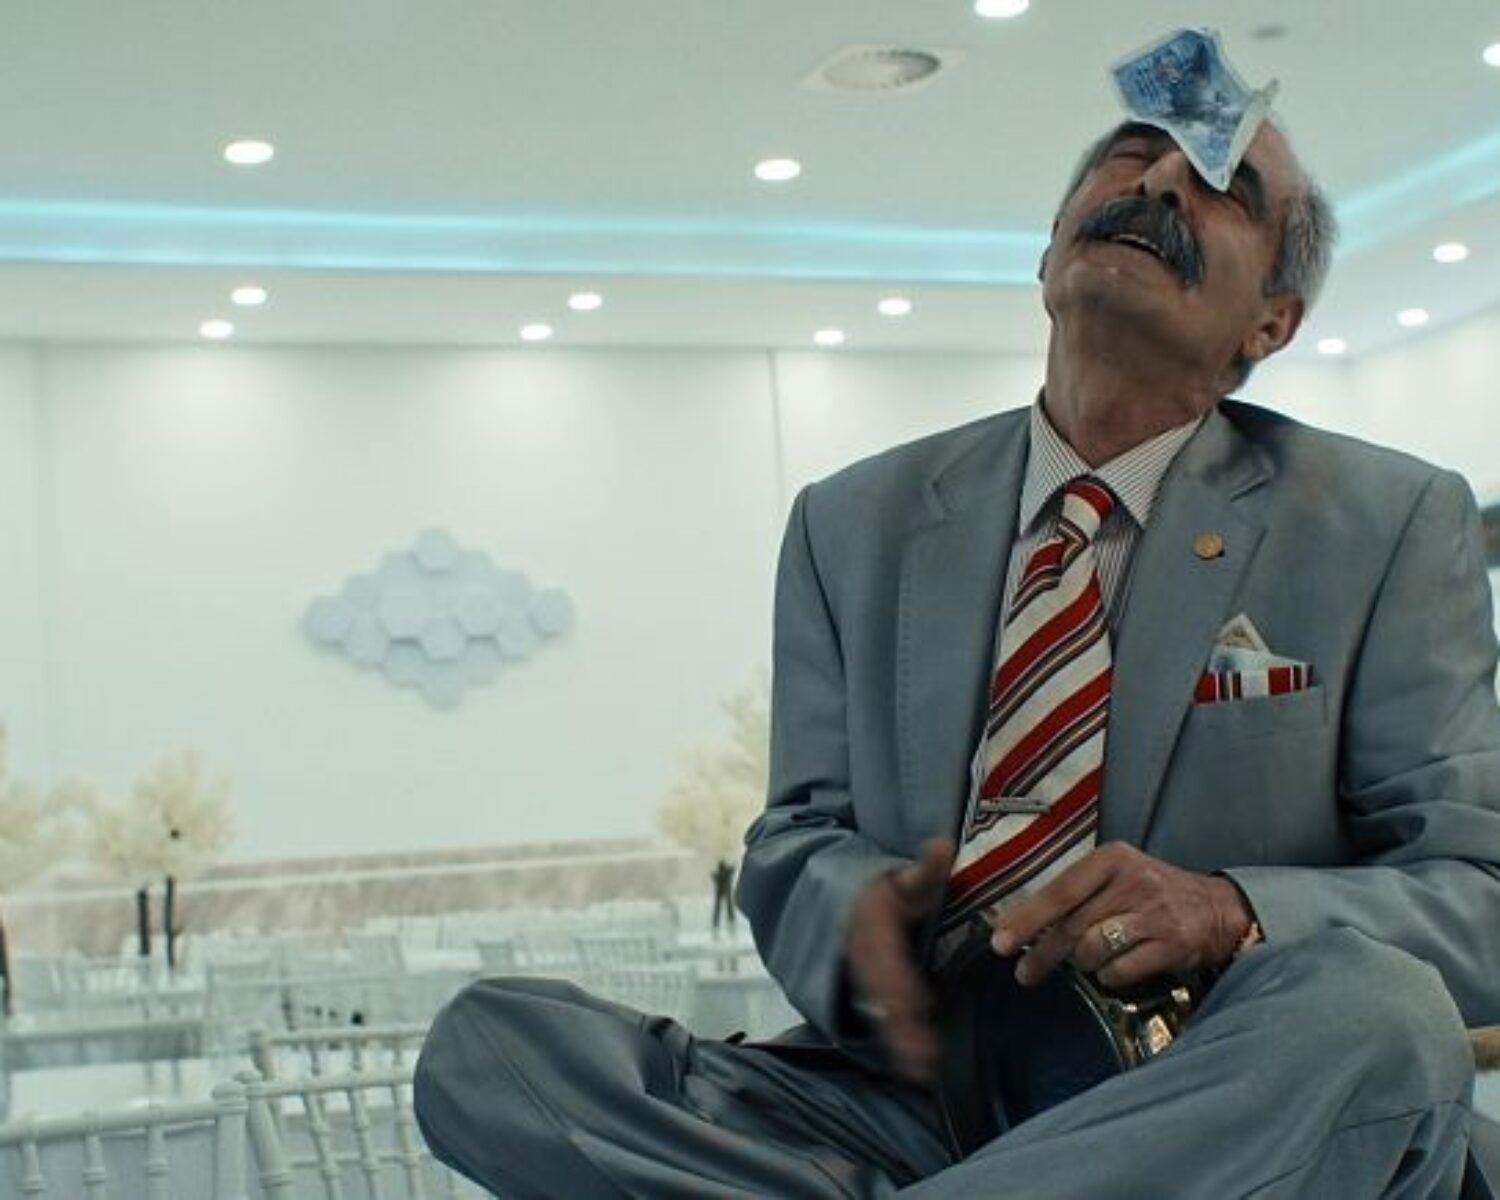 Ein fein gekleideter, älterer Mann sitzt auf einem Tisch und hat einen Geldschein auf die Stirn geklebt. Es handelt sich um eine Szene aus dem Film.